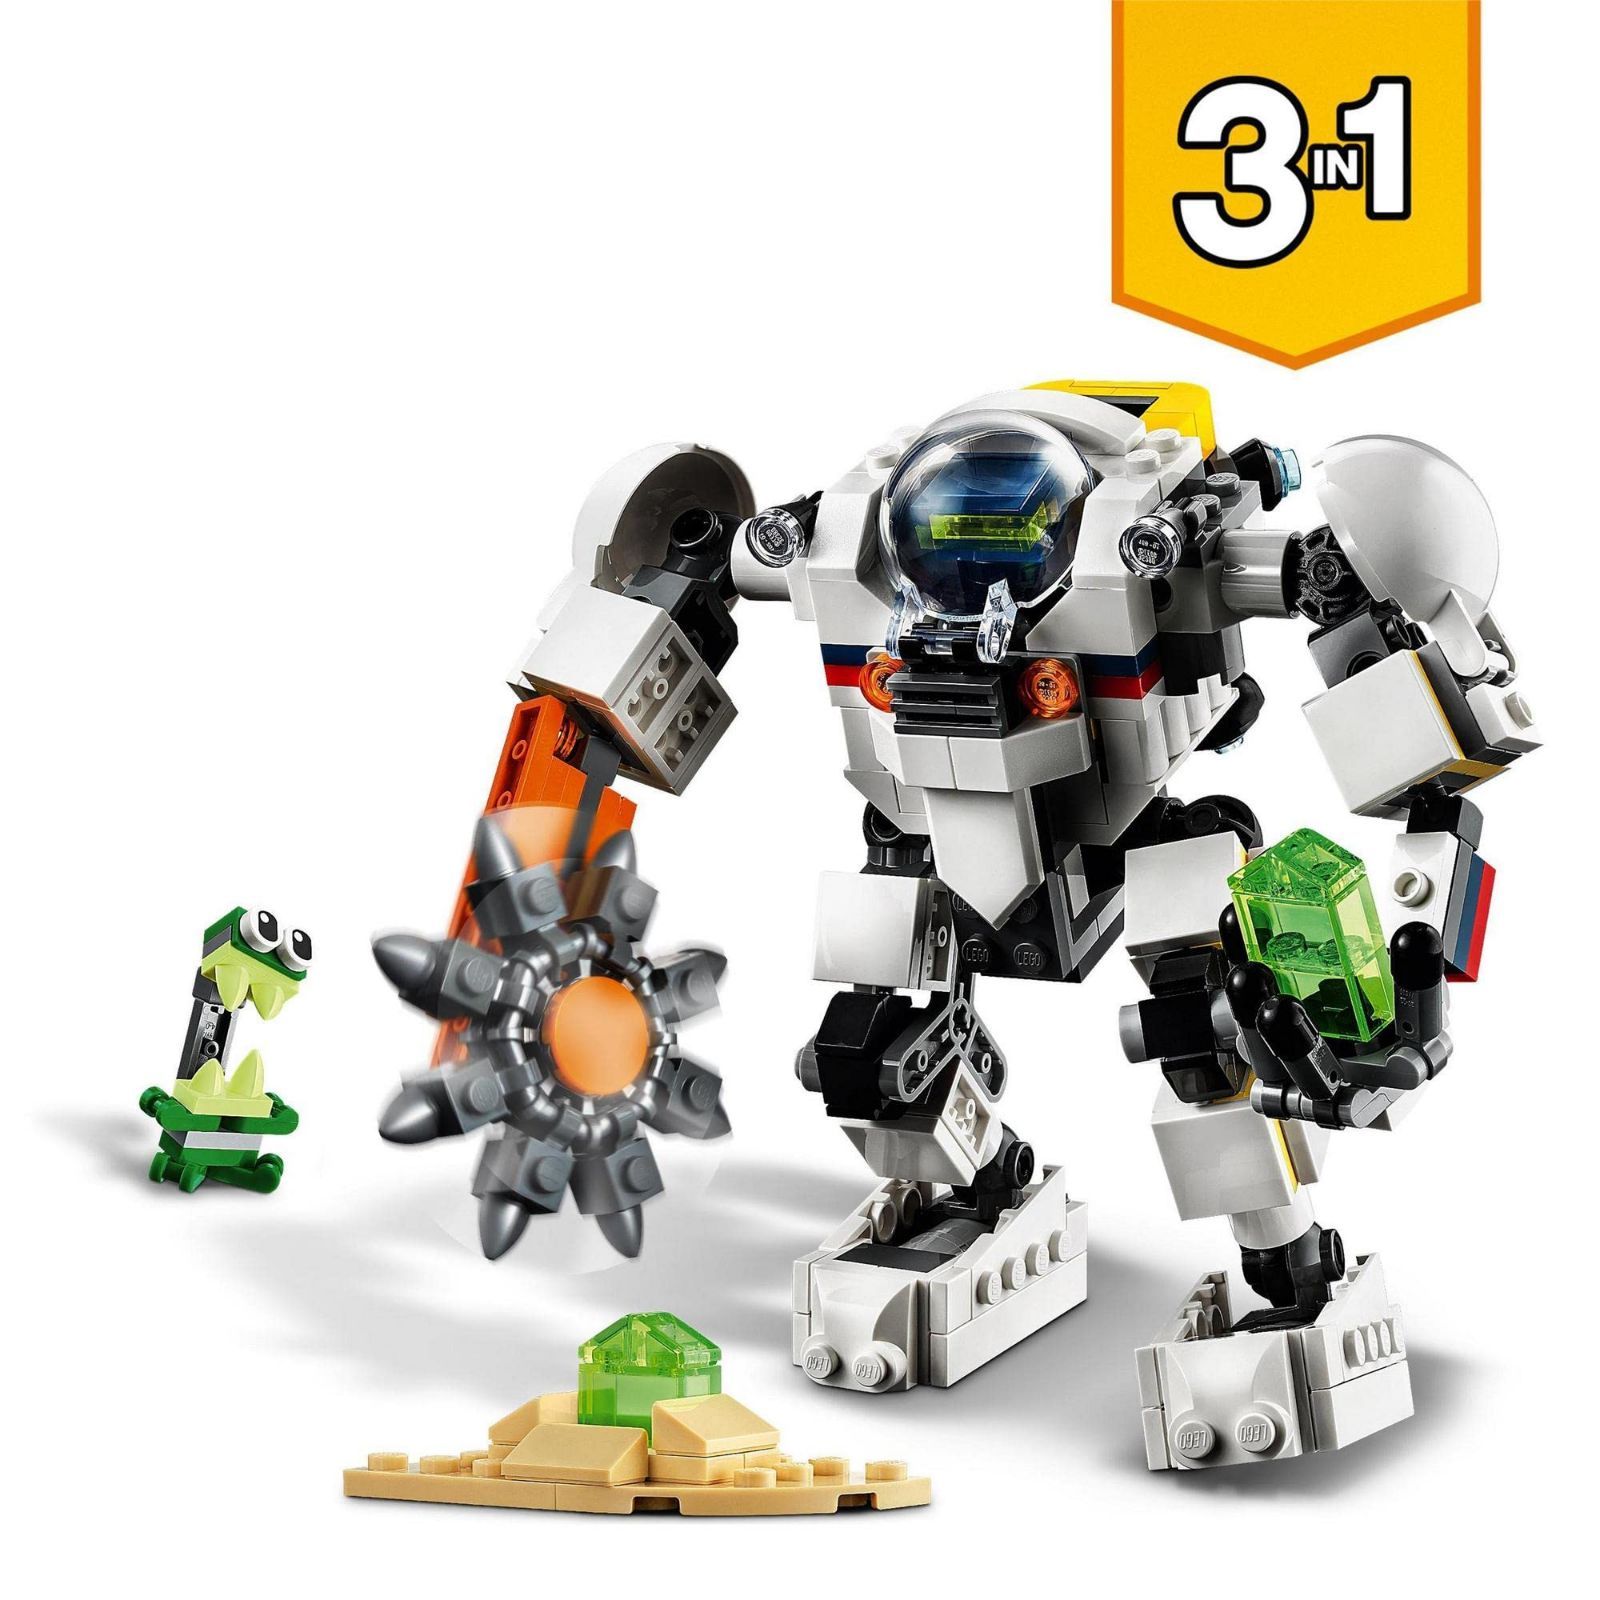 特価セール】31115 おもちゃ ブロック 宇宙探査ロボット プレゼント